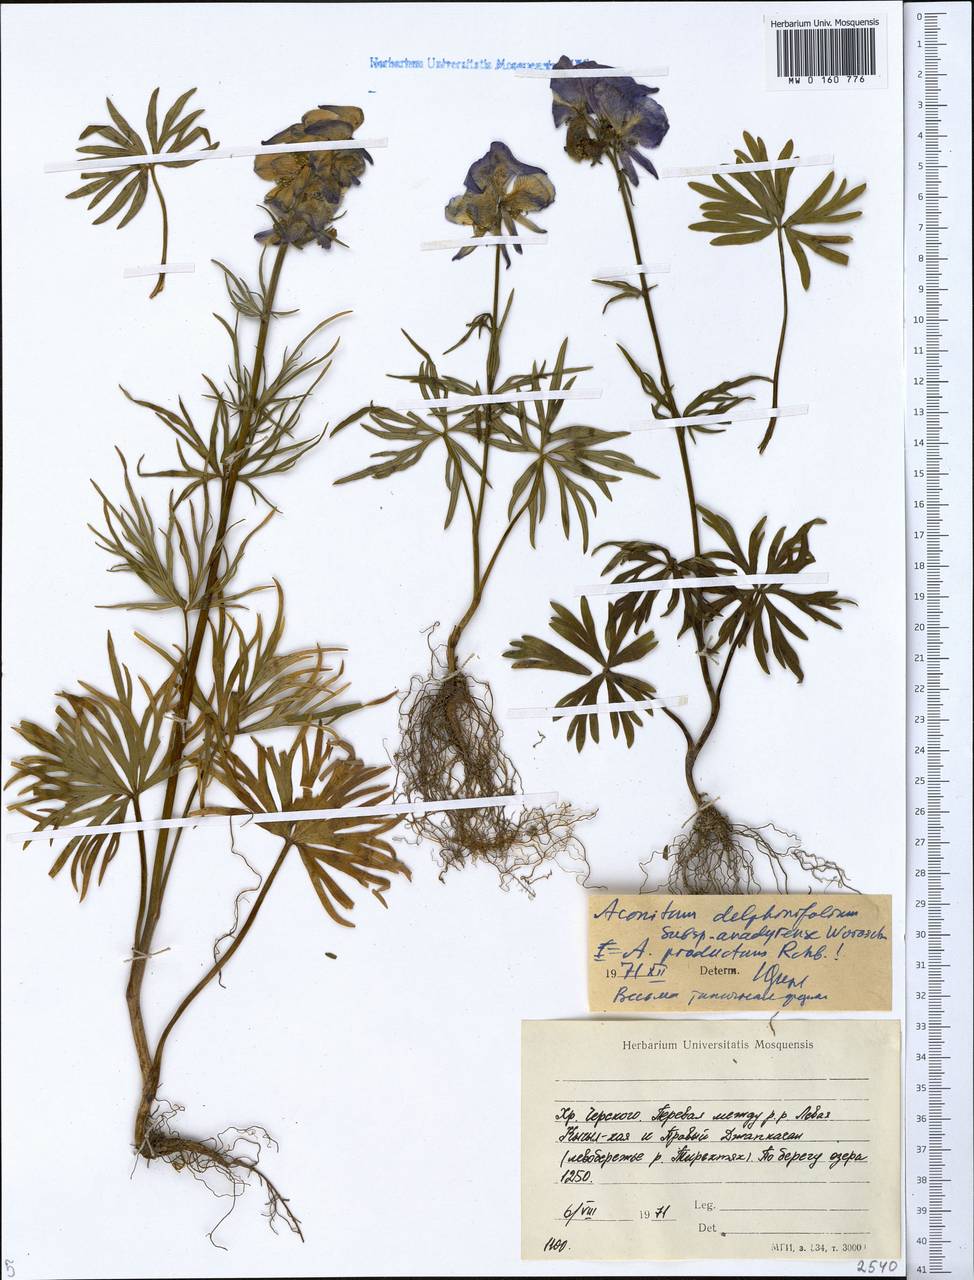 Aconitum delphinifolium subsp. productum (Rchb.) Vorosch., Siberia, Yakutia (S5) (Russia)